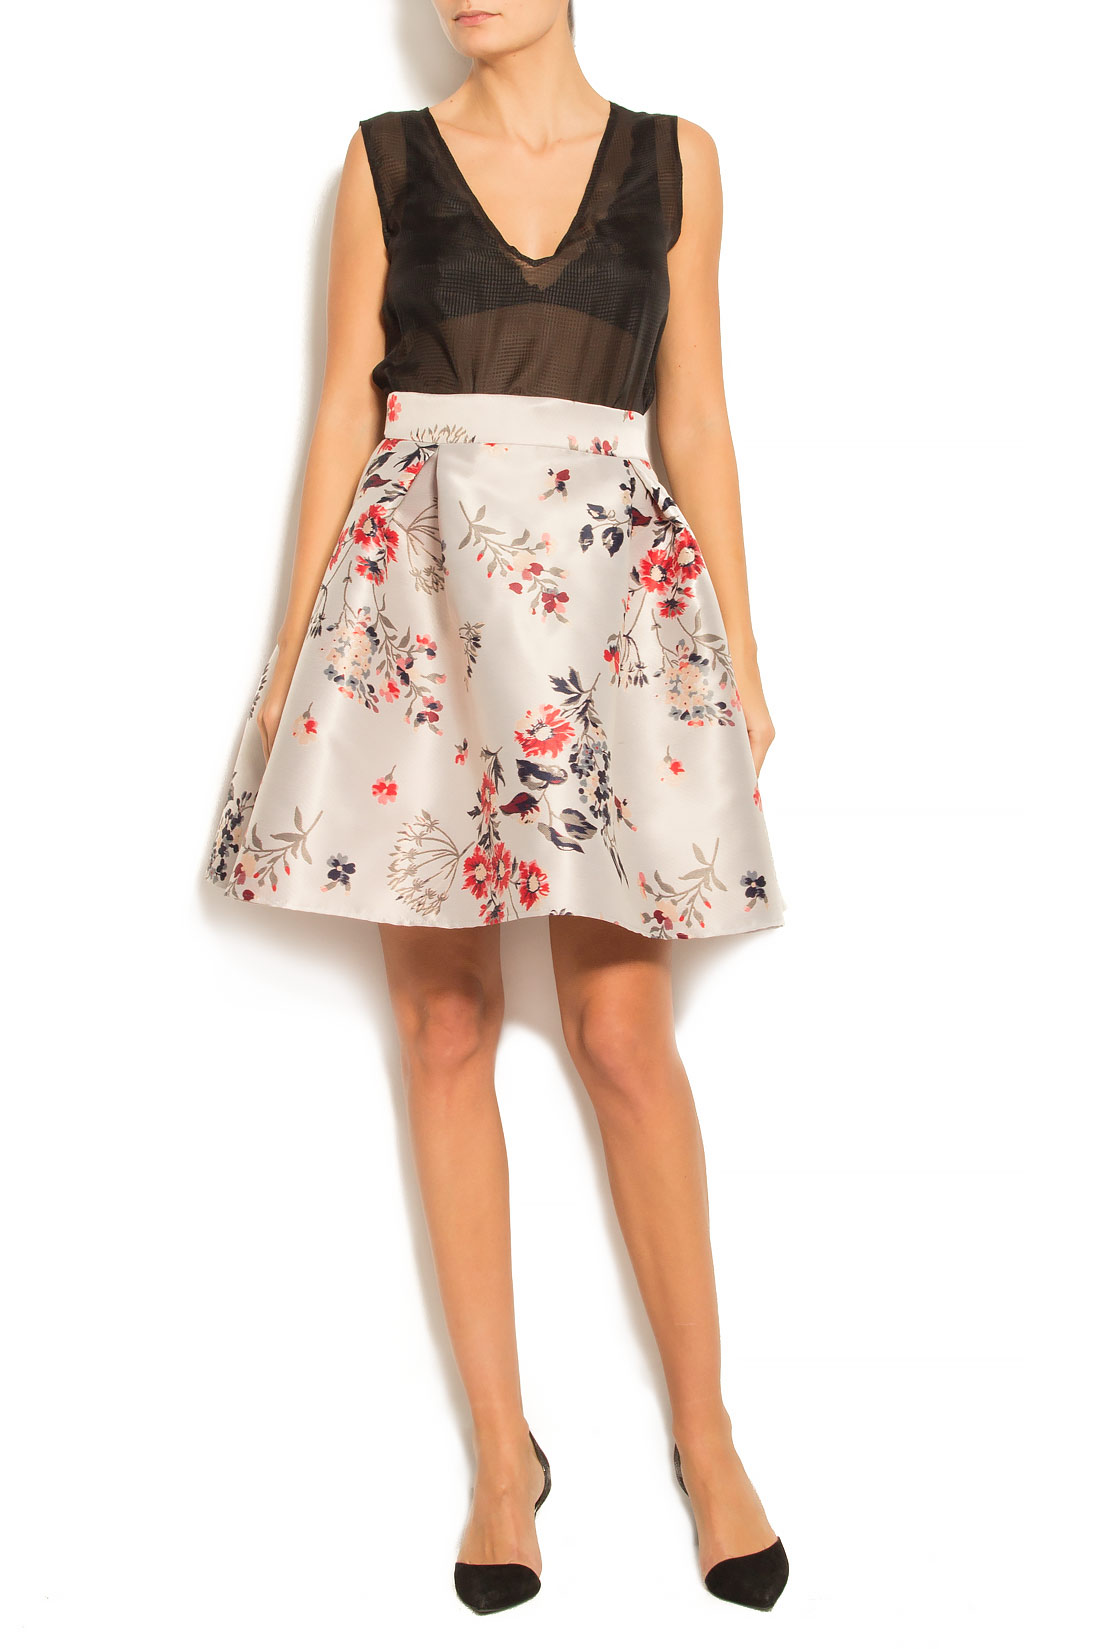 Floral-jacquard mini skirt Elena Perseil image 0